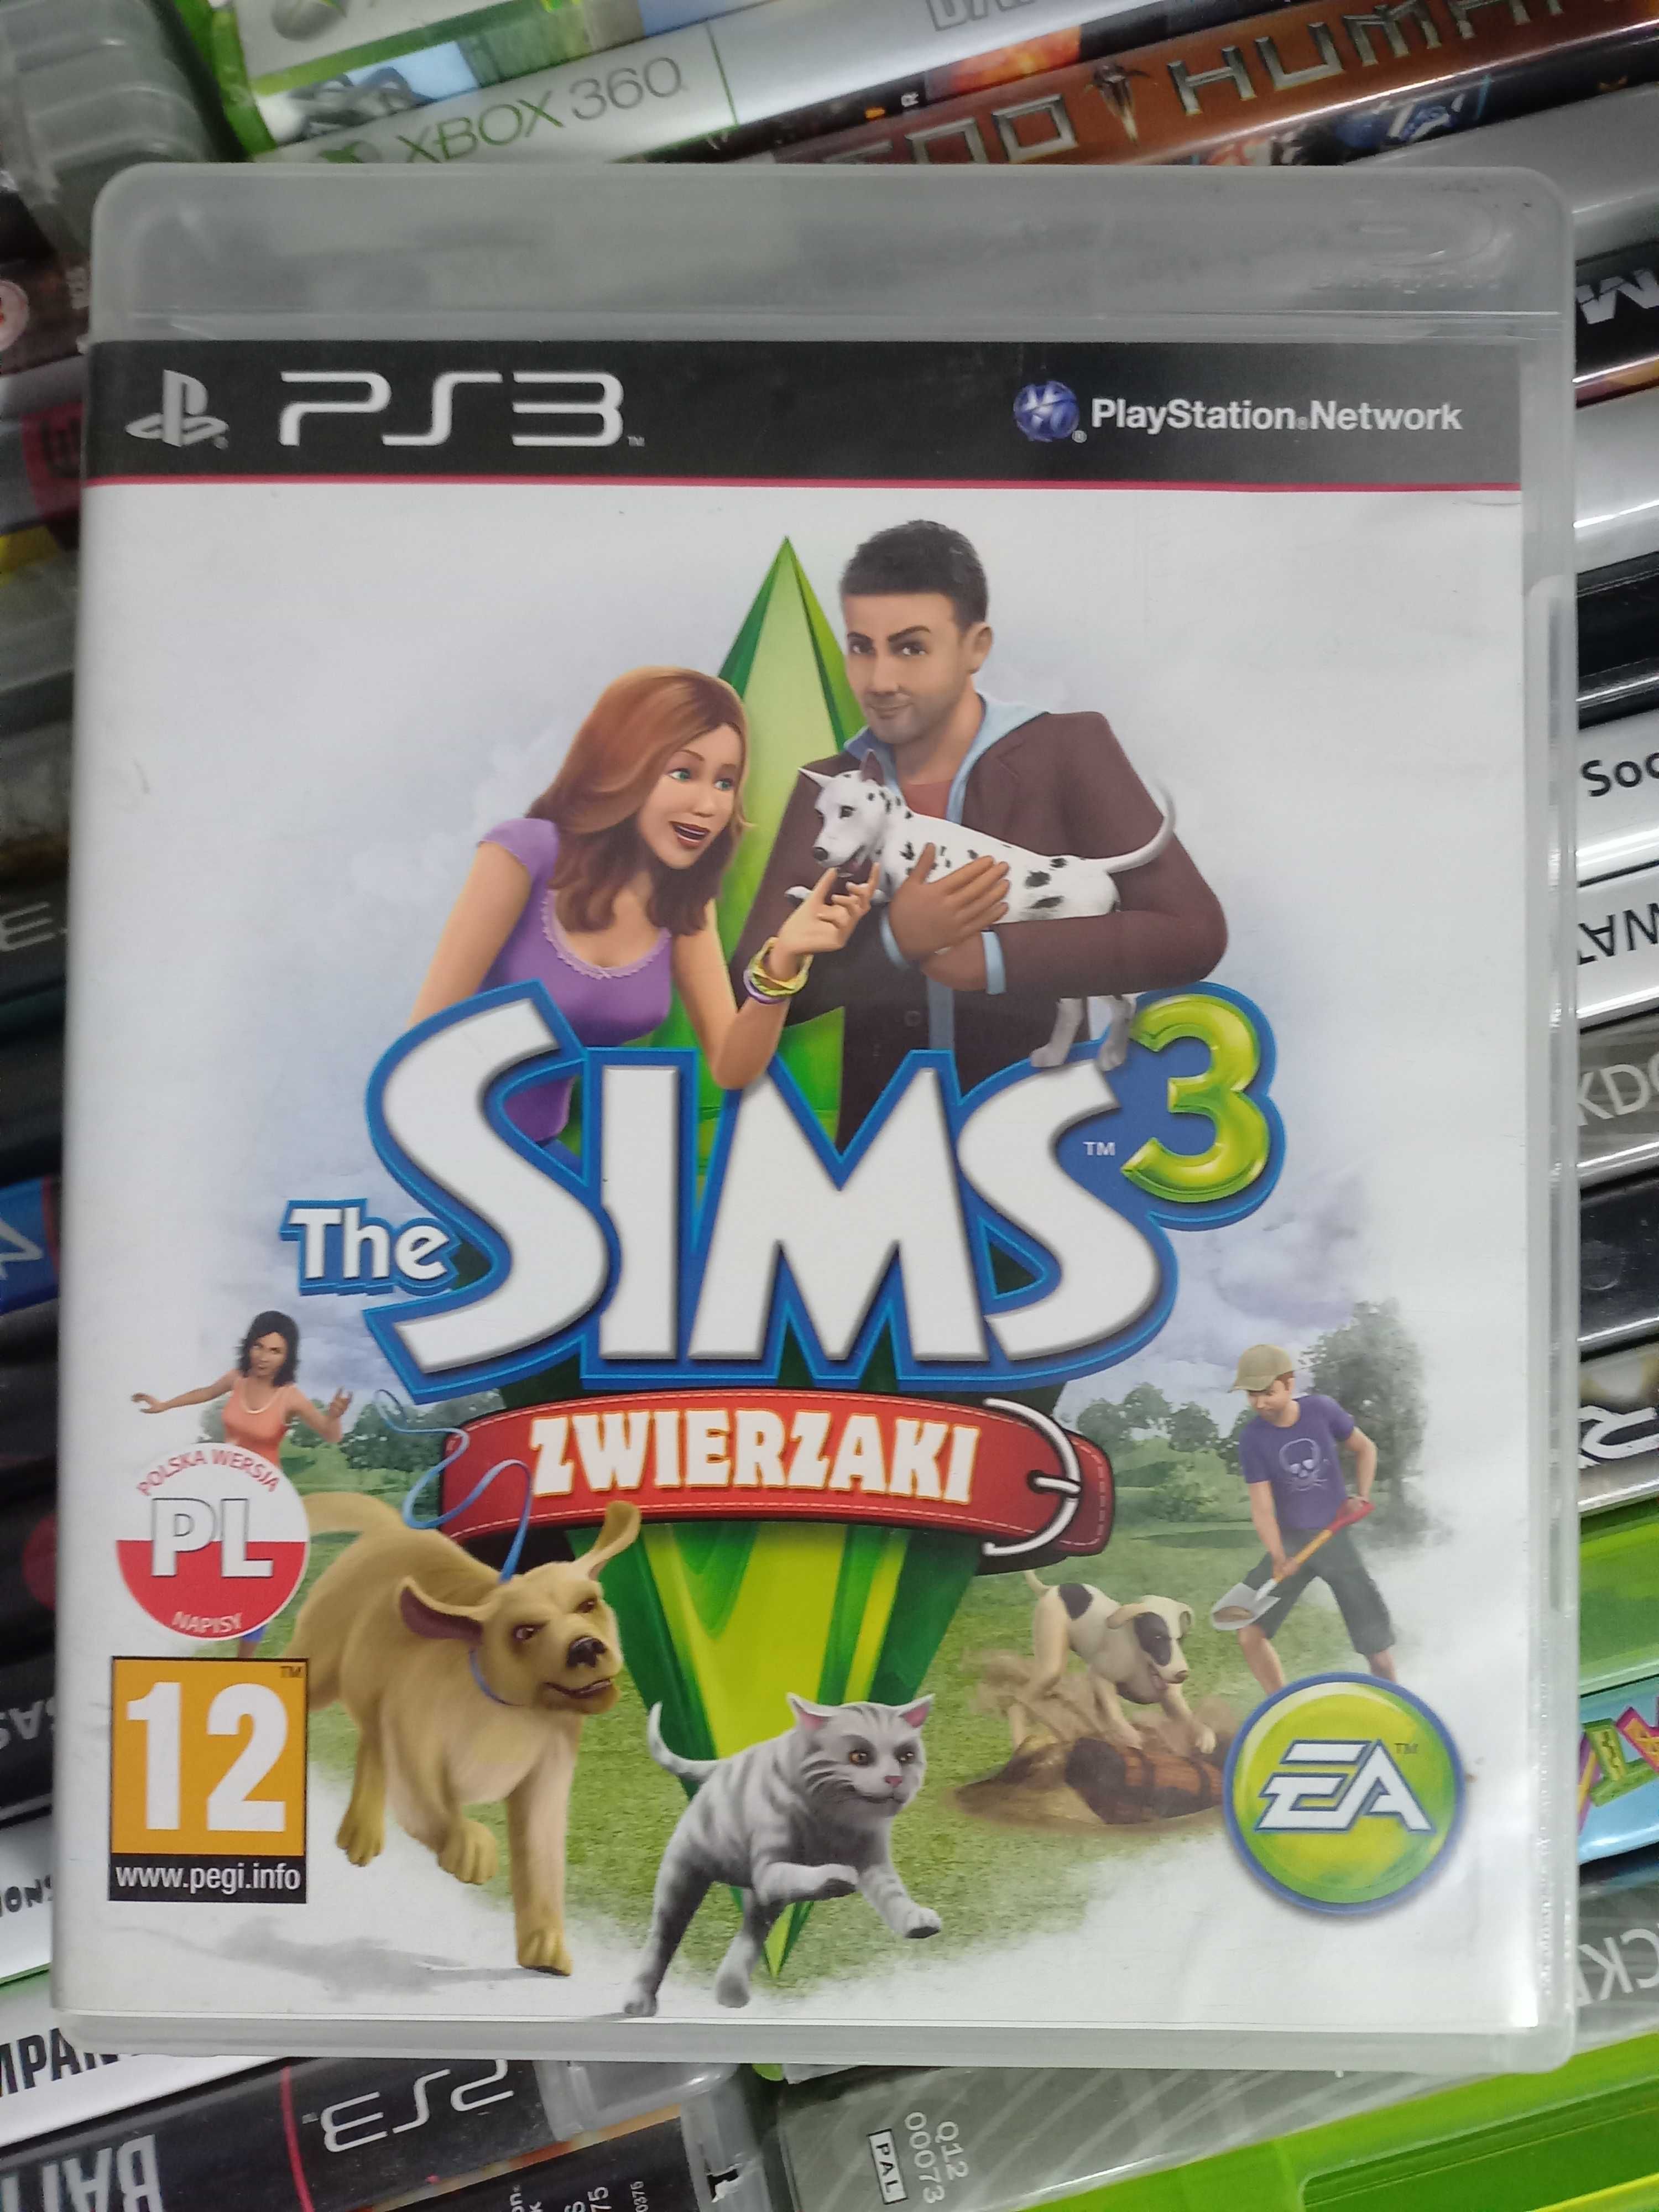 The Sims 3 Zwierzaki PL|PS3